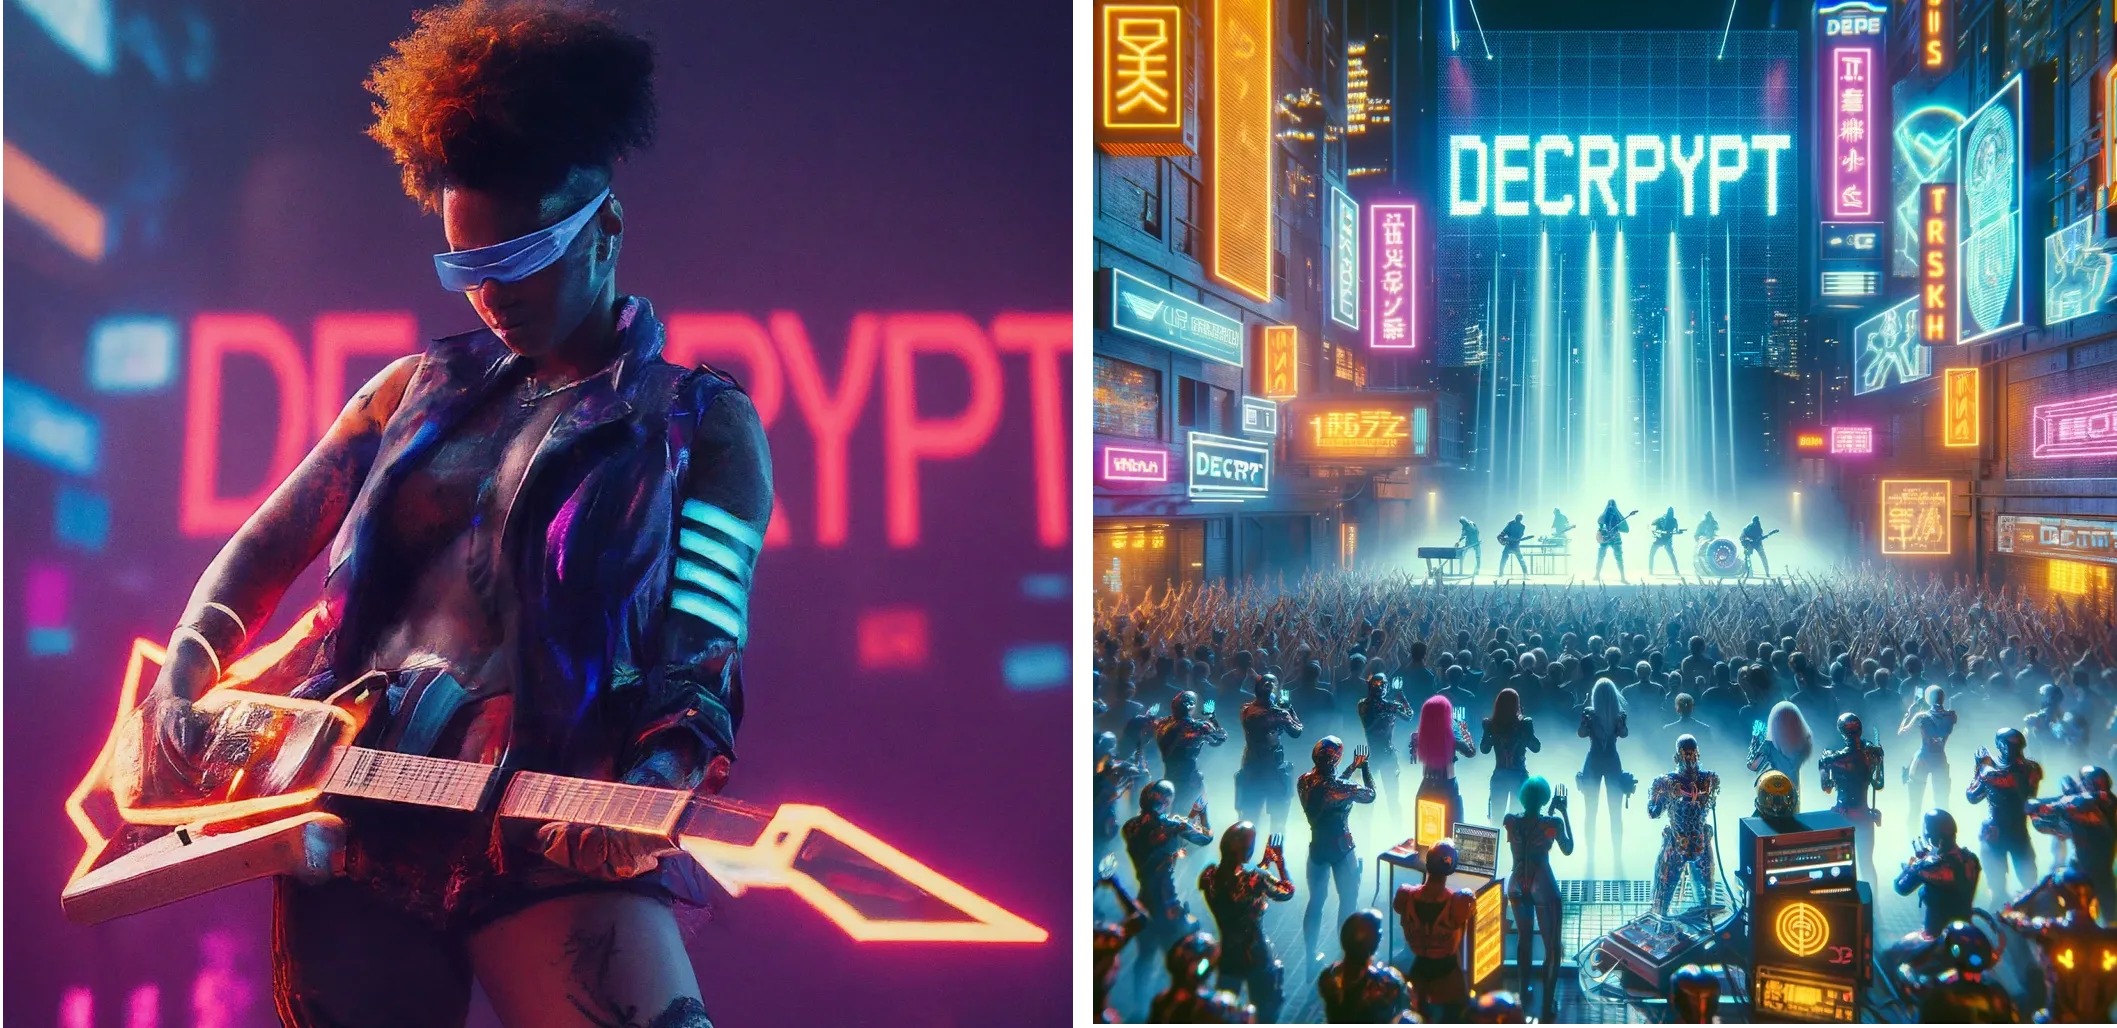 Artis futuristik Cyberpunk tampil di atas panggung dengan kata "DECRYPT" di latar belakang lampu neon. Gemini (kiri) vs ChatGPT Plus (kanan)